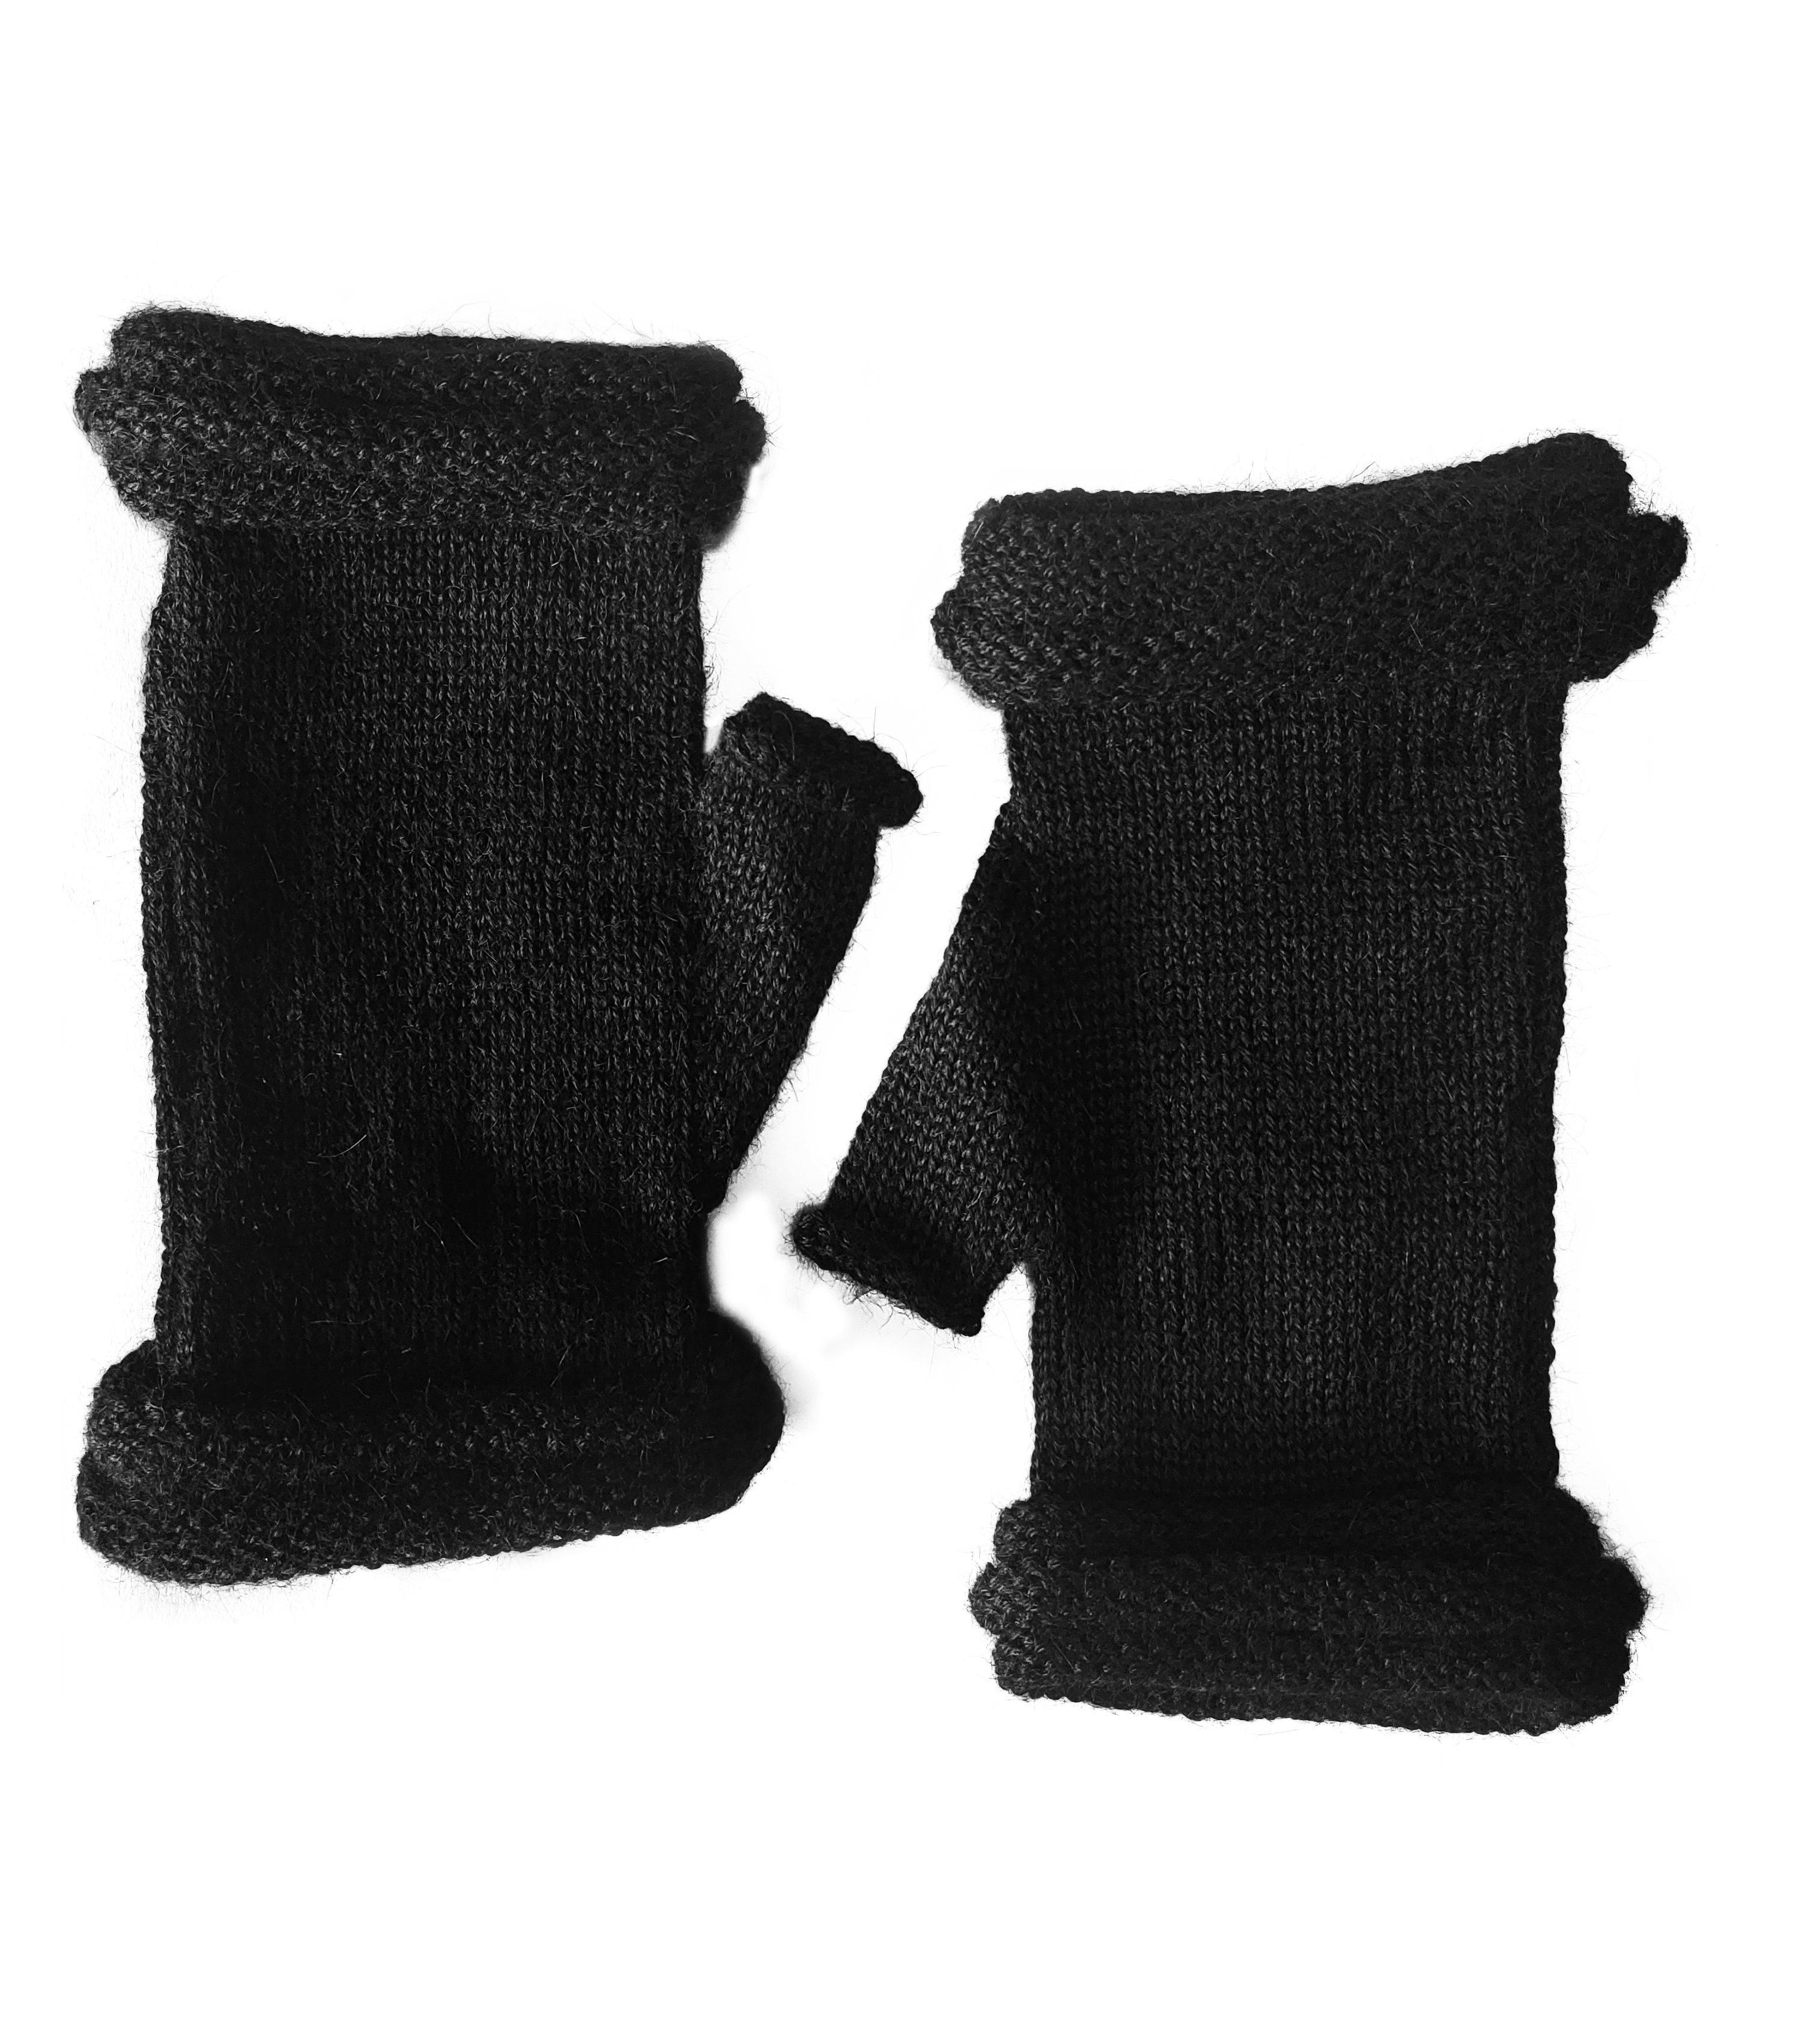 Damen 100% Alpakawolle Fäustlinge Handschuhe schwarz Posh Alpaka Storiguanti Gear Herren aus